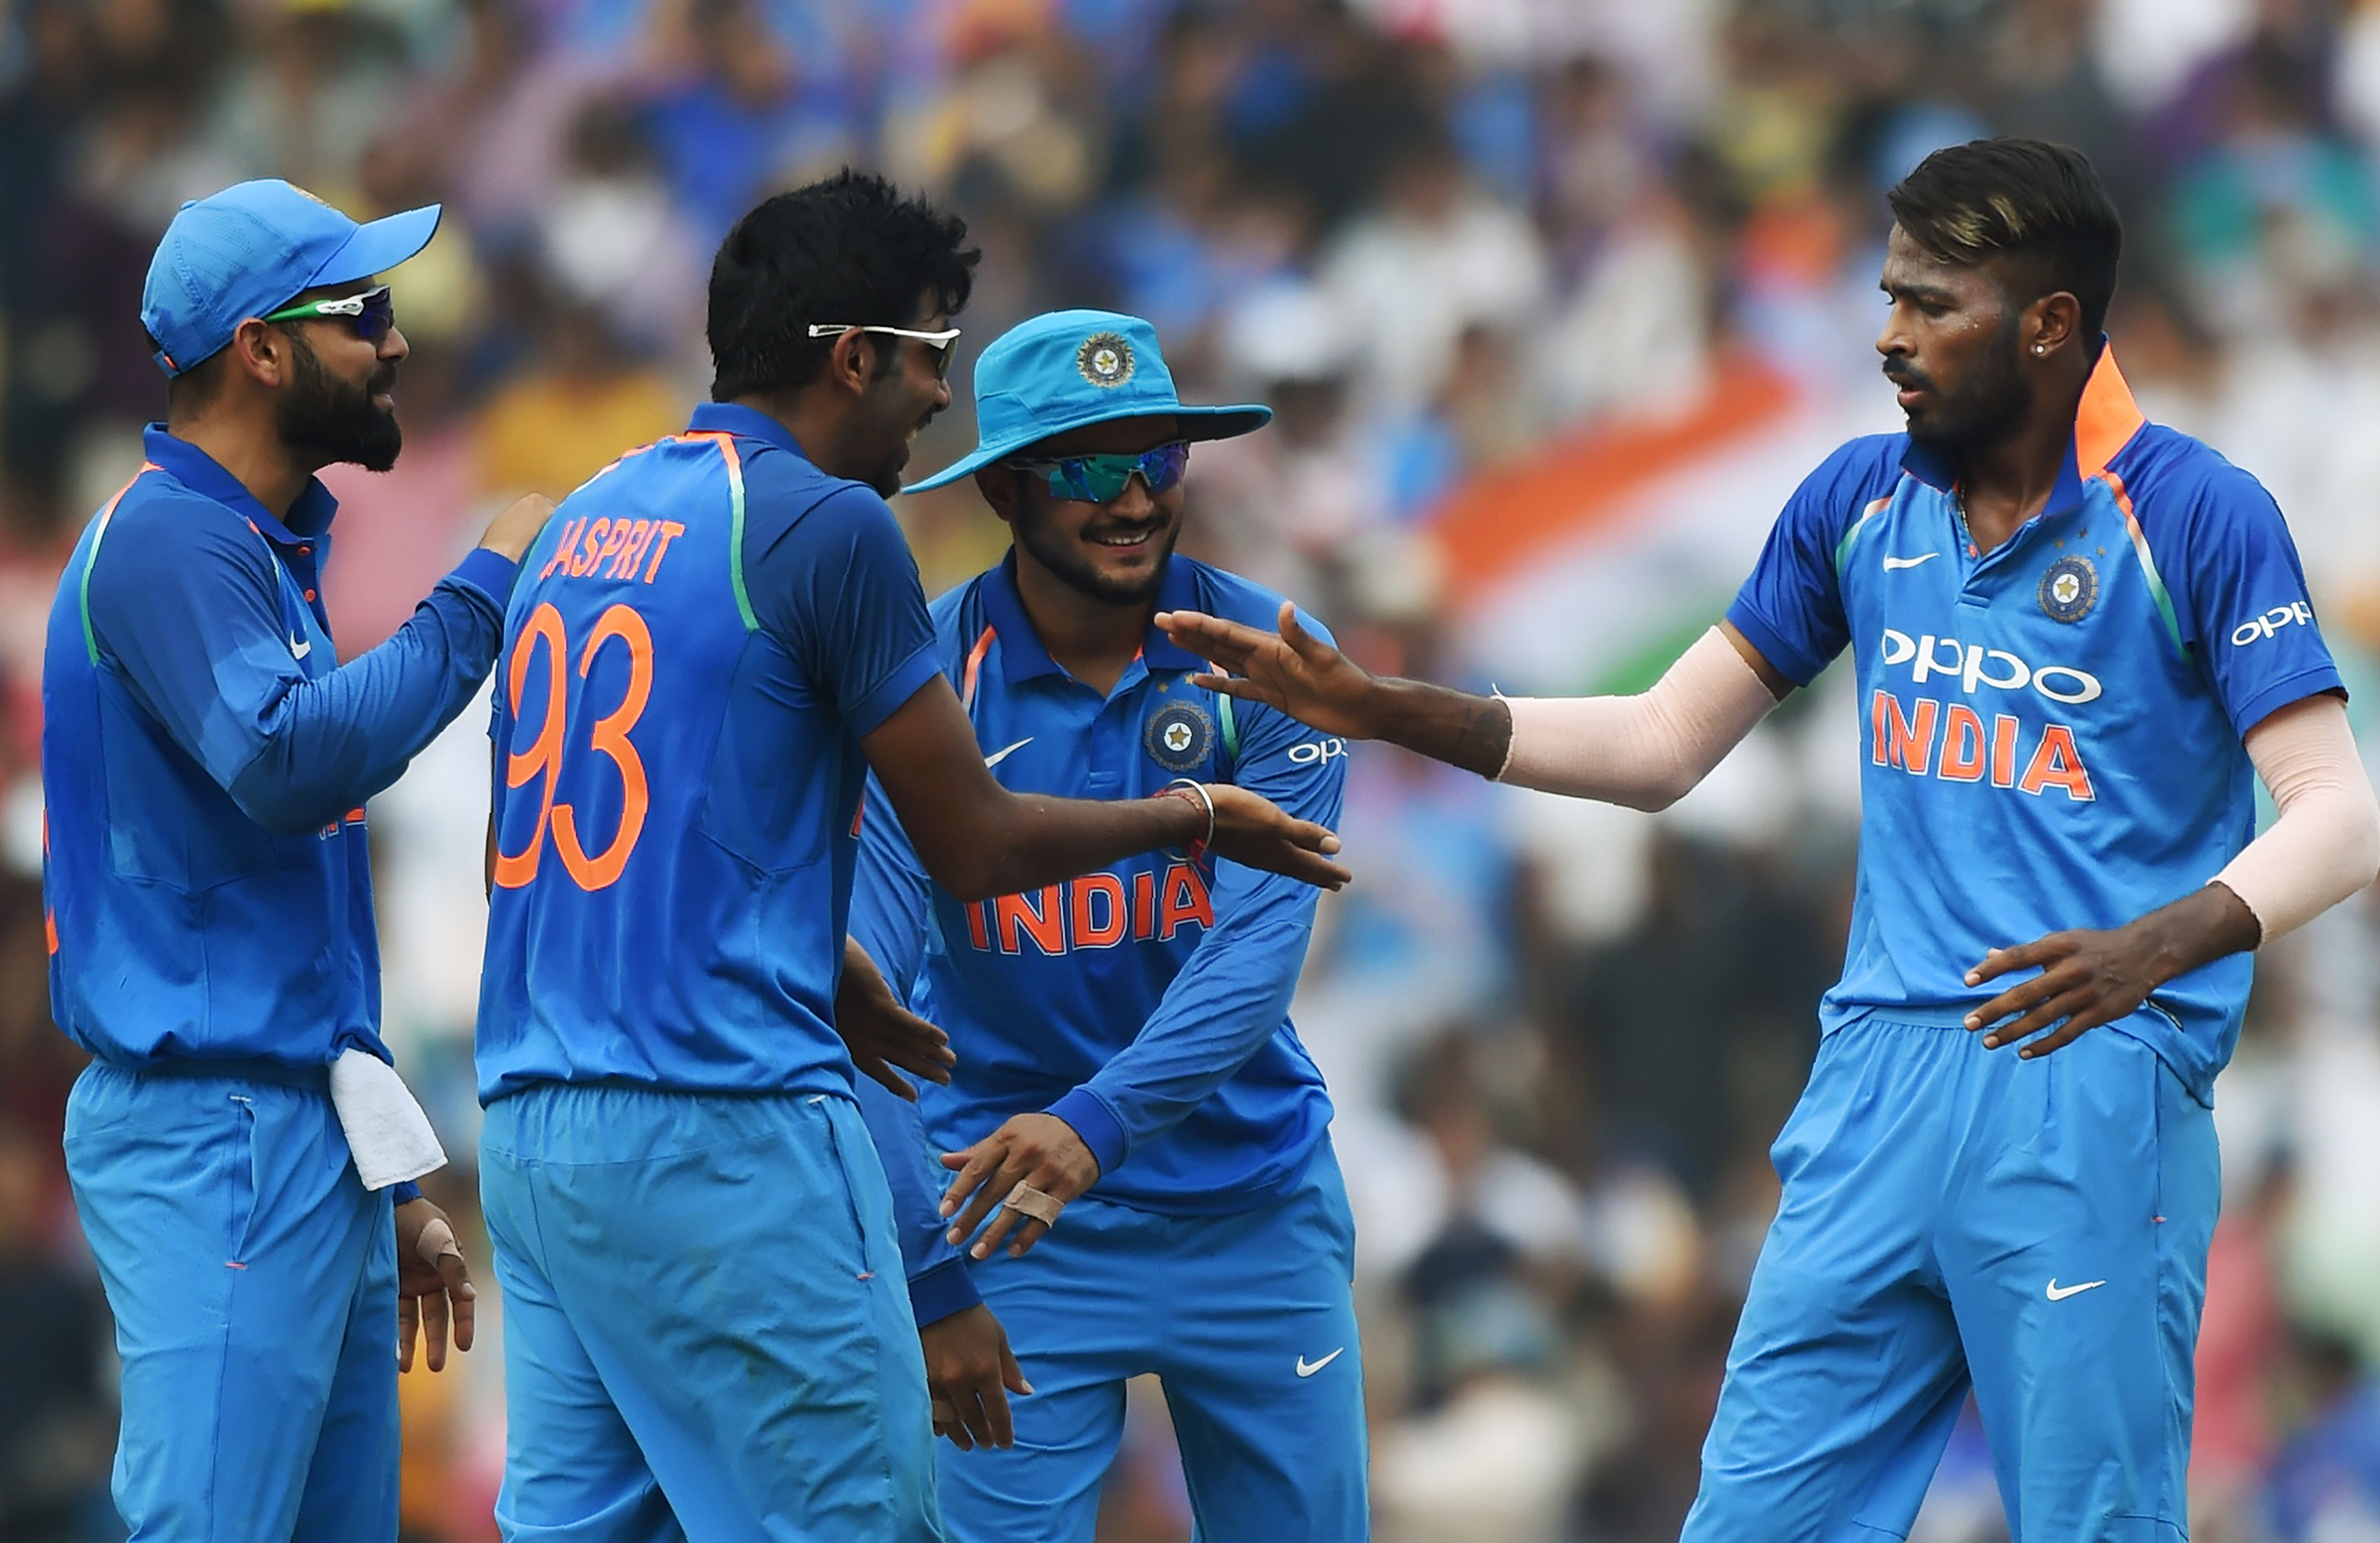 نیوزی لینڈ کے خلاف تیسرا T20I ڈرا پر ختم ہونے پر ہندوستان نے لگاتار 10ویں بین الاقوامی سیریز جیت لی